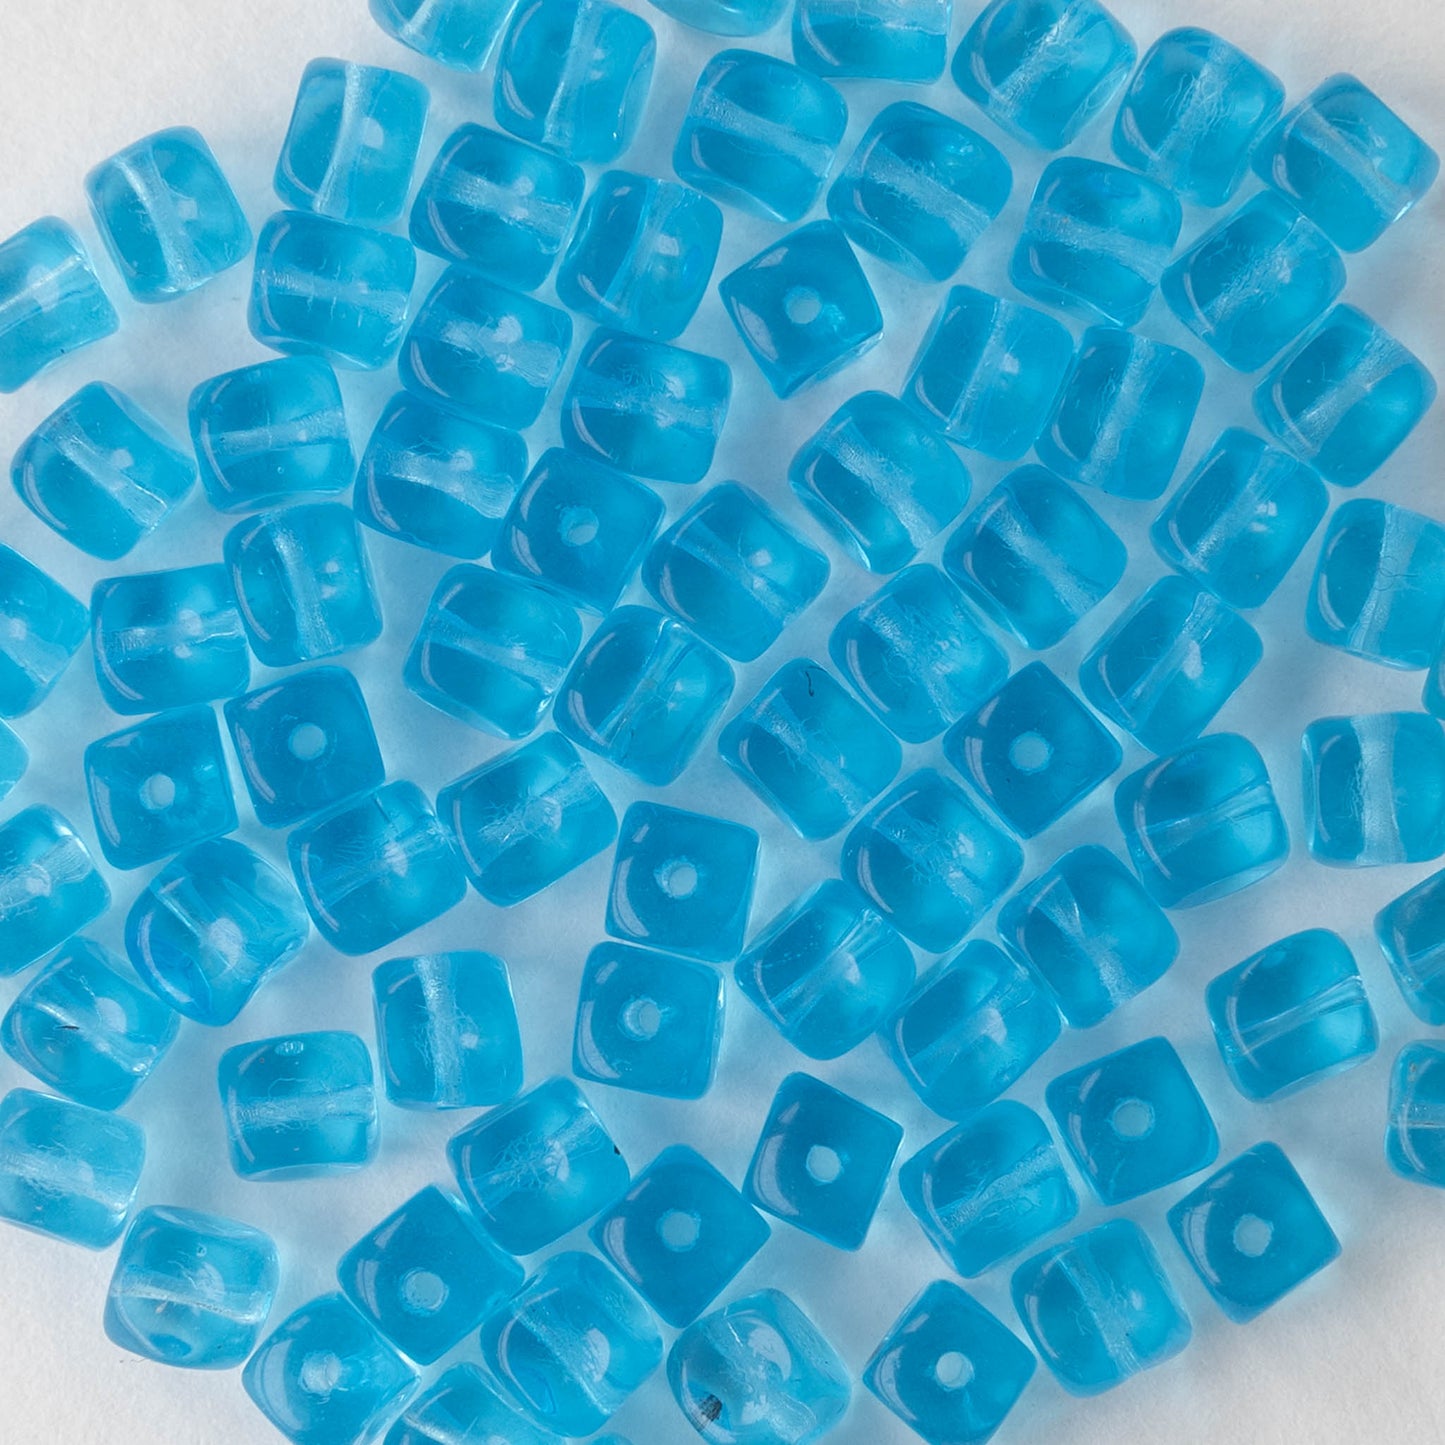 5mm Glass Cube Beads - Aqua - 100 beads